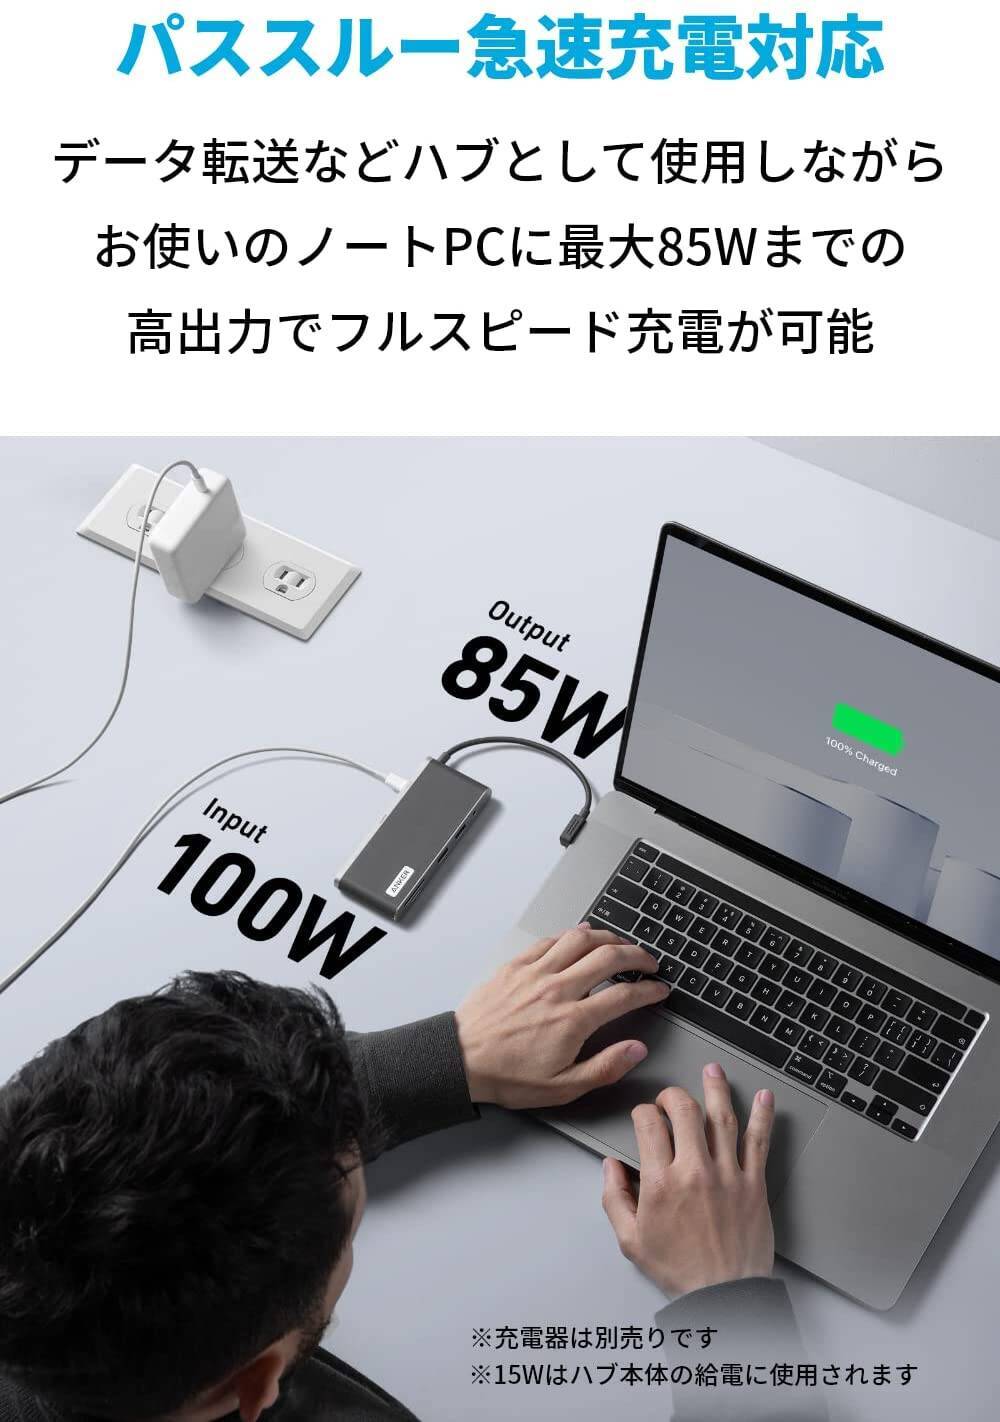 【30%OFF】8ポートUSB-Cハブ「Anker 655 USB-C ハブ (8-in-1)」がセール中